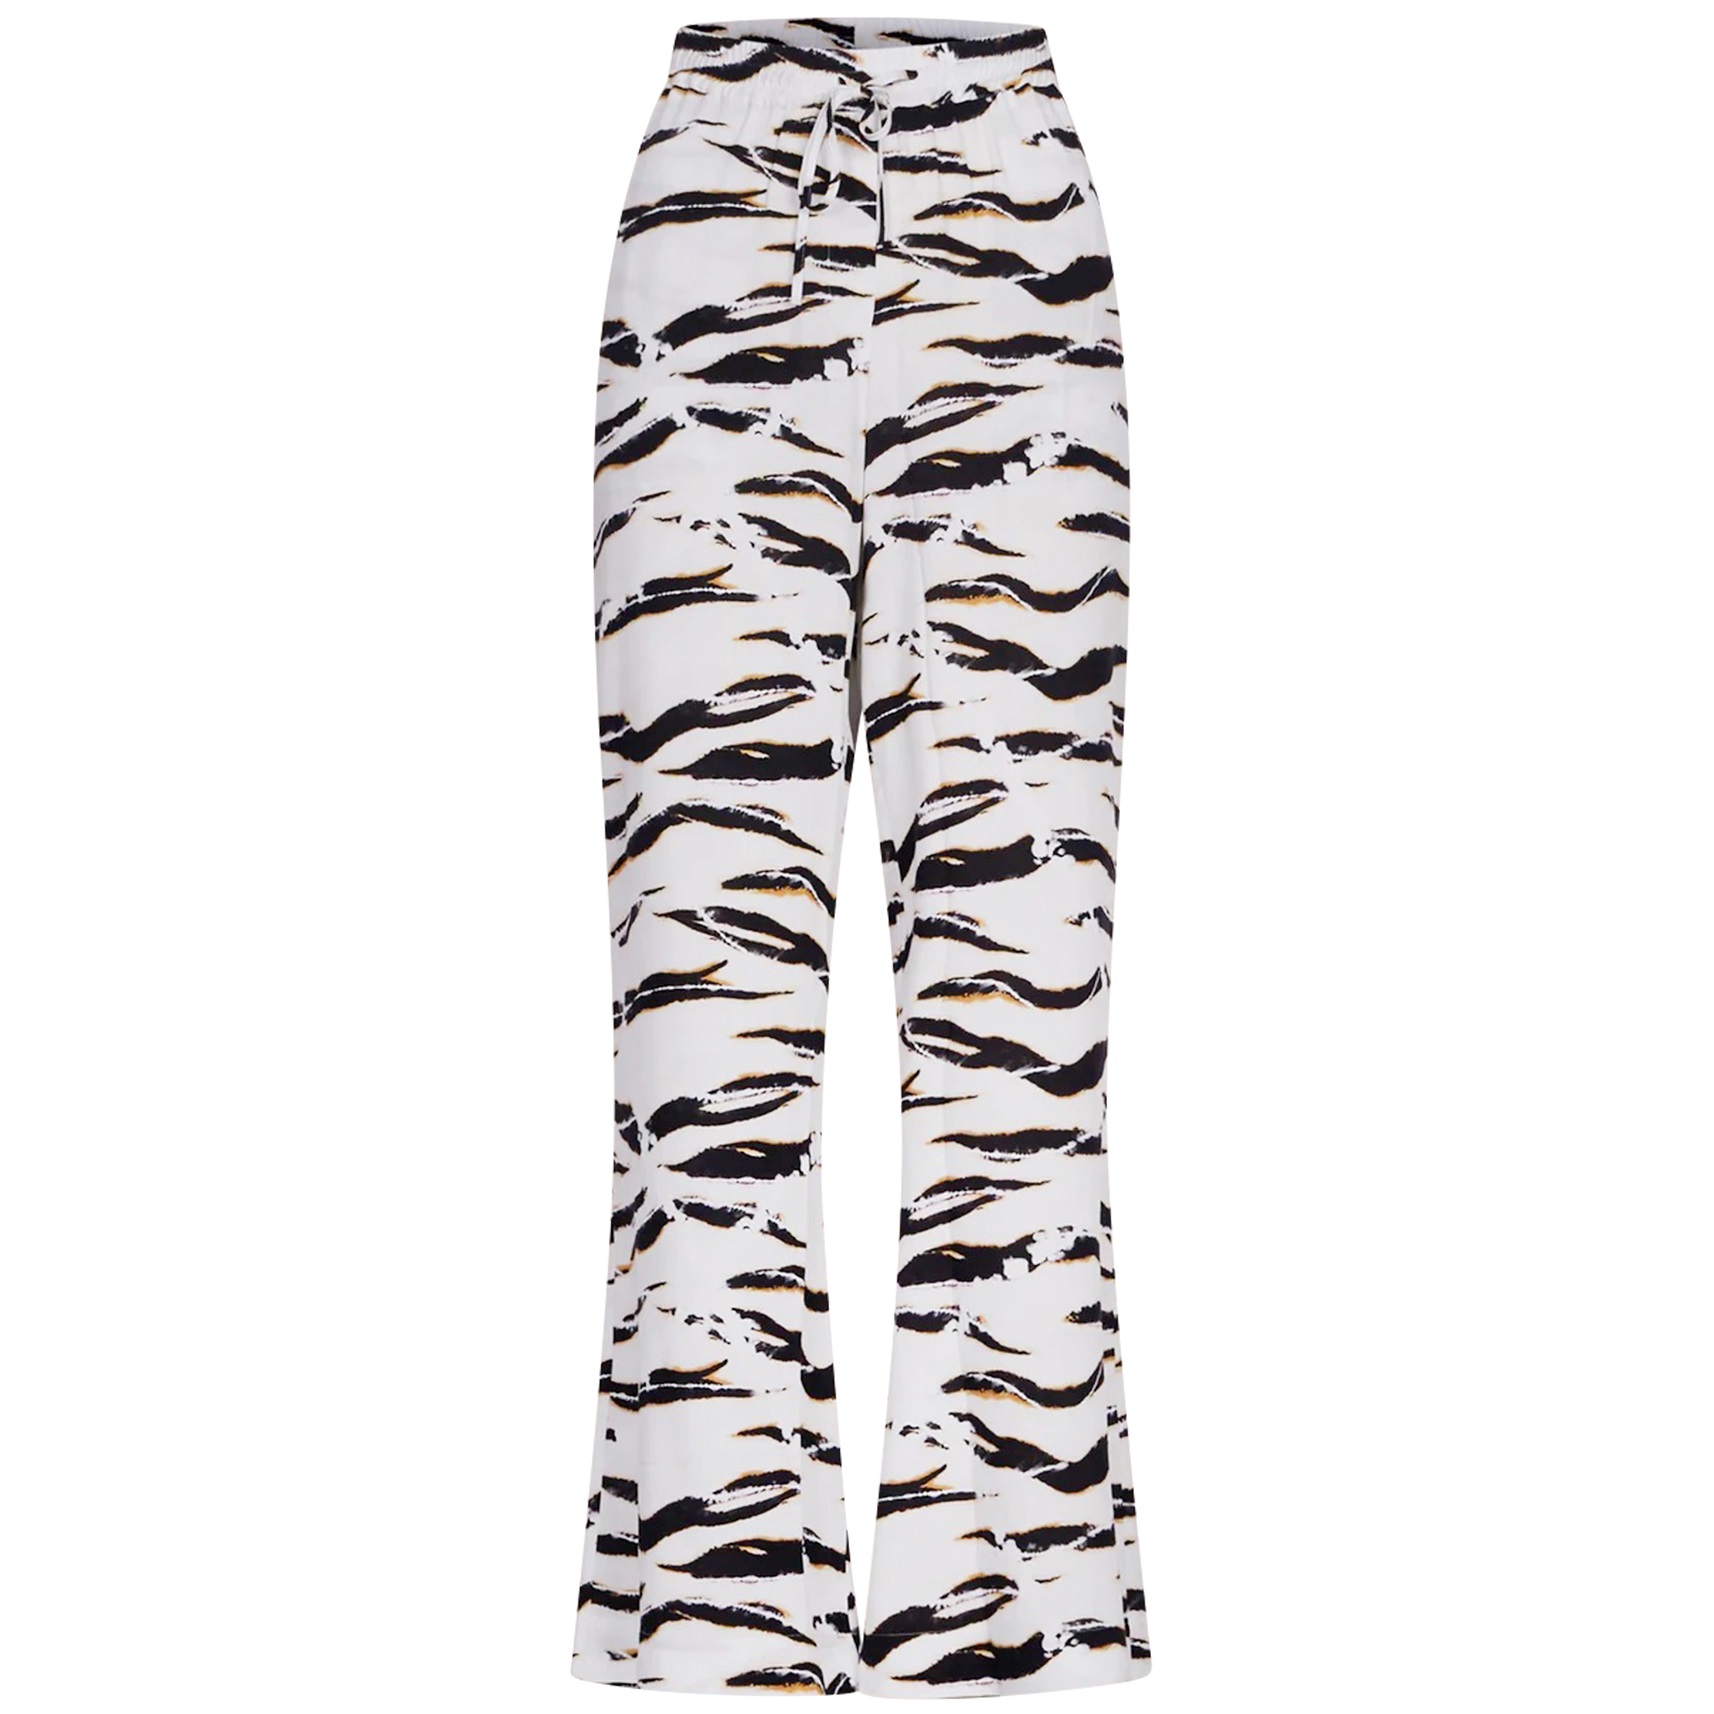 LALA BERLIN Pants Palooza in Zebra Wave S